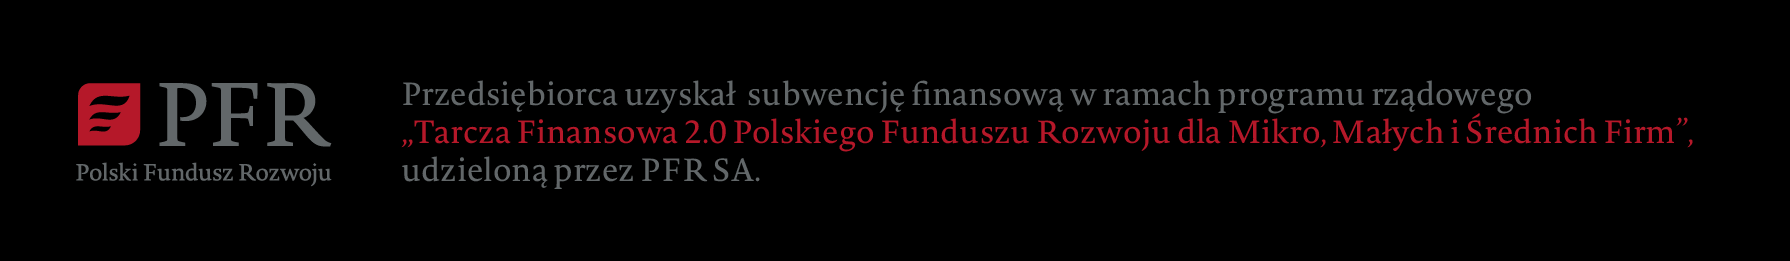 Przedsiębiorca uzyskał subwencję finansową w ramach programu rządowego Tarcza Finansowa 2.0 Polskiego Funduszu Rozwoju Dla Mikro, Małych i Średnich Firm, udzieloną przez PFR SA.